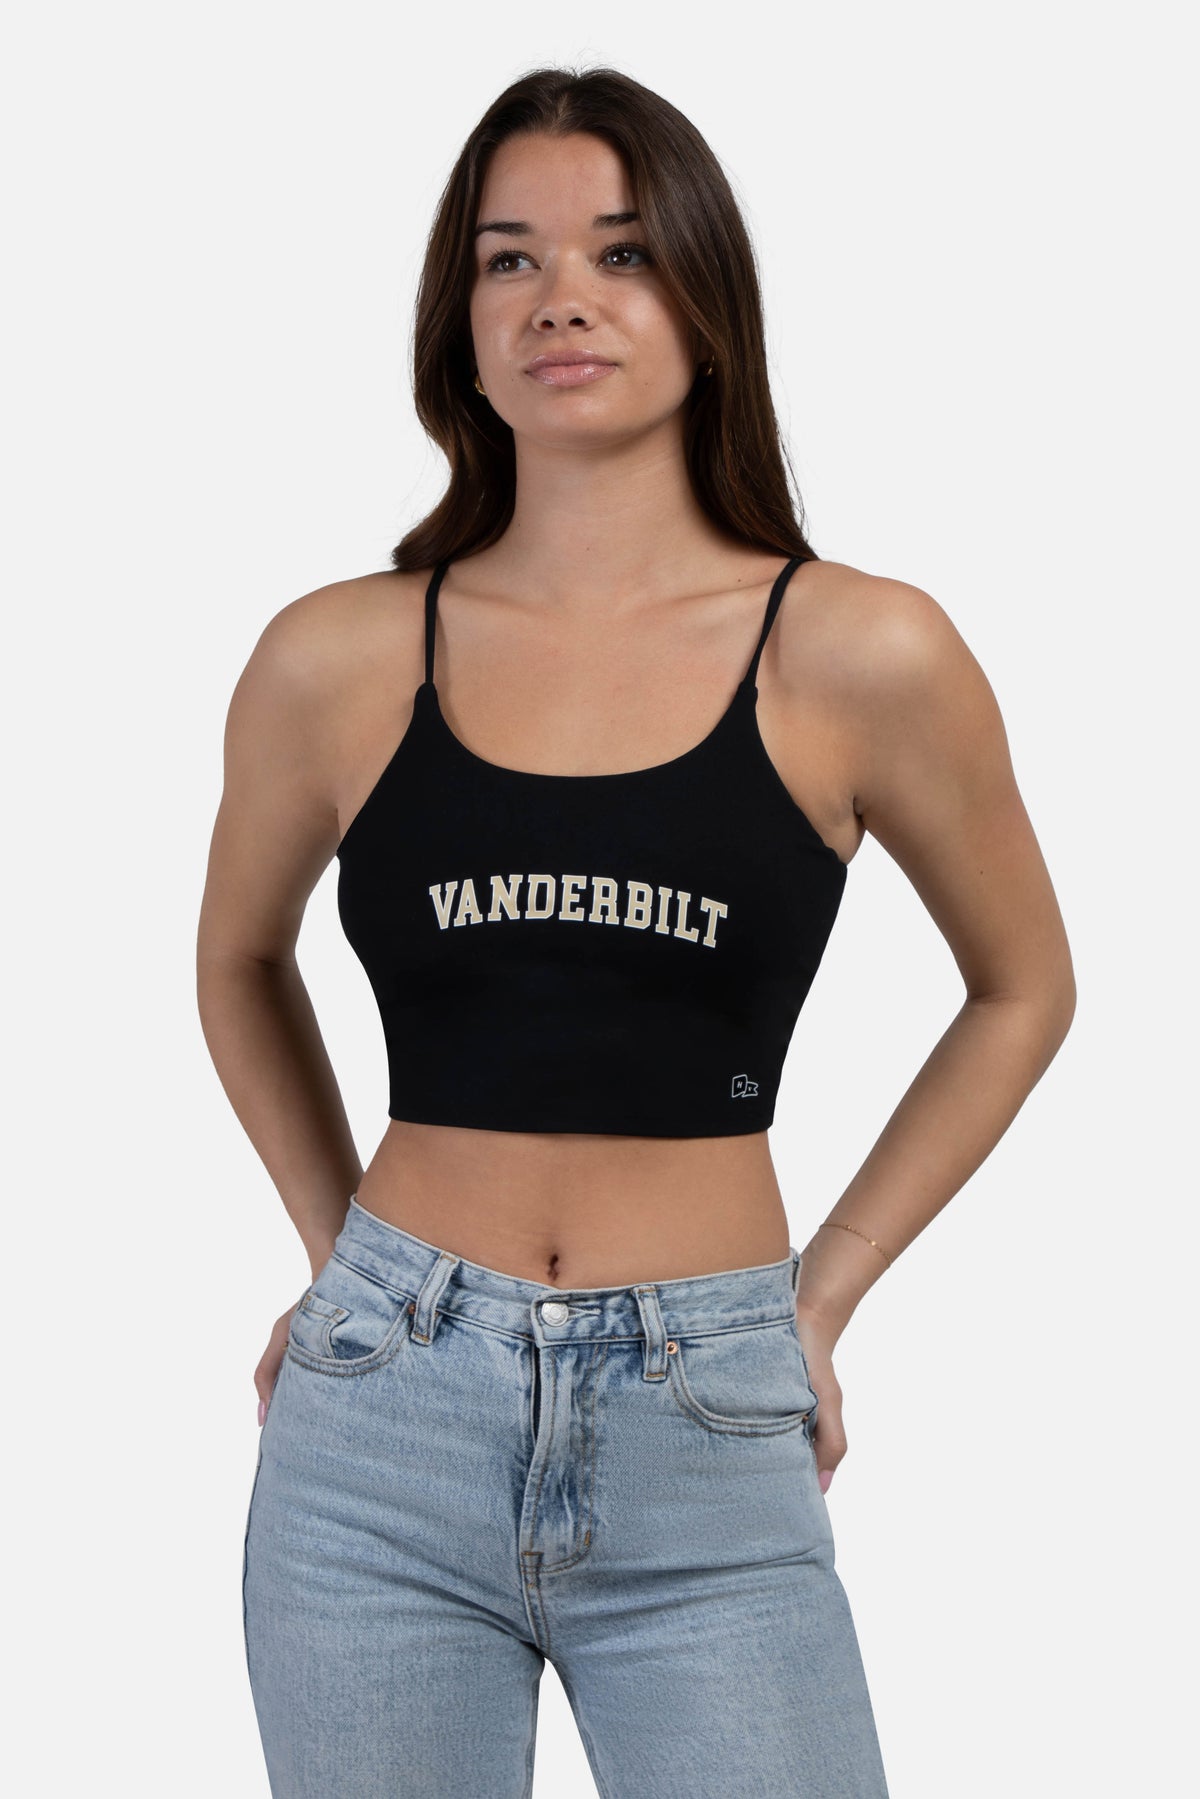 Vanderbilt University Bra Tank Top